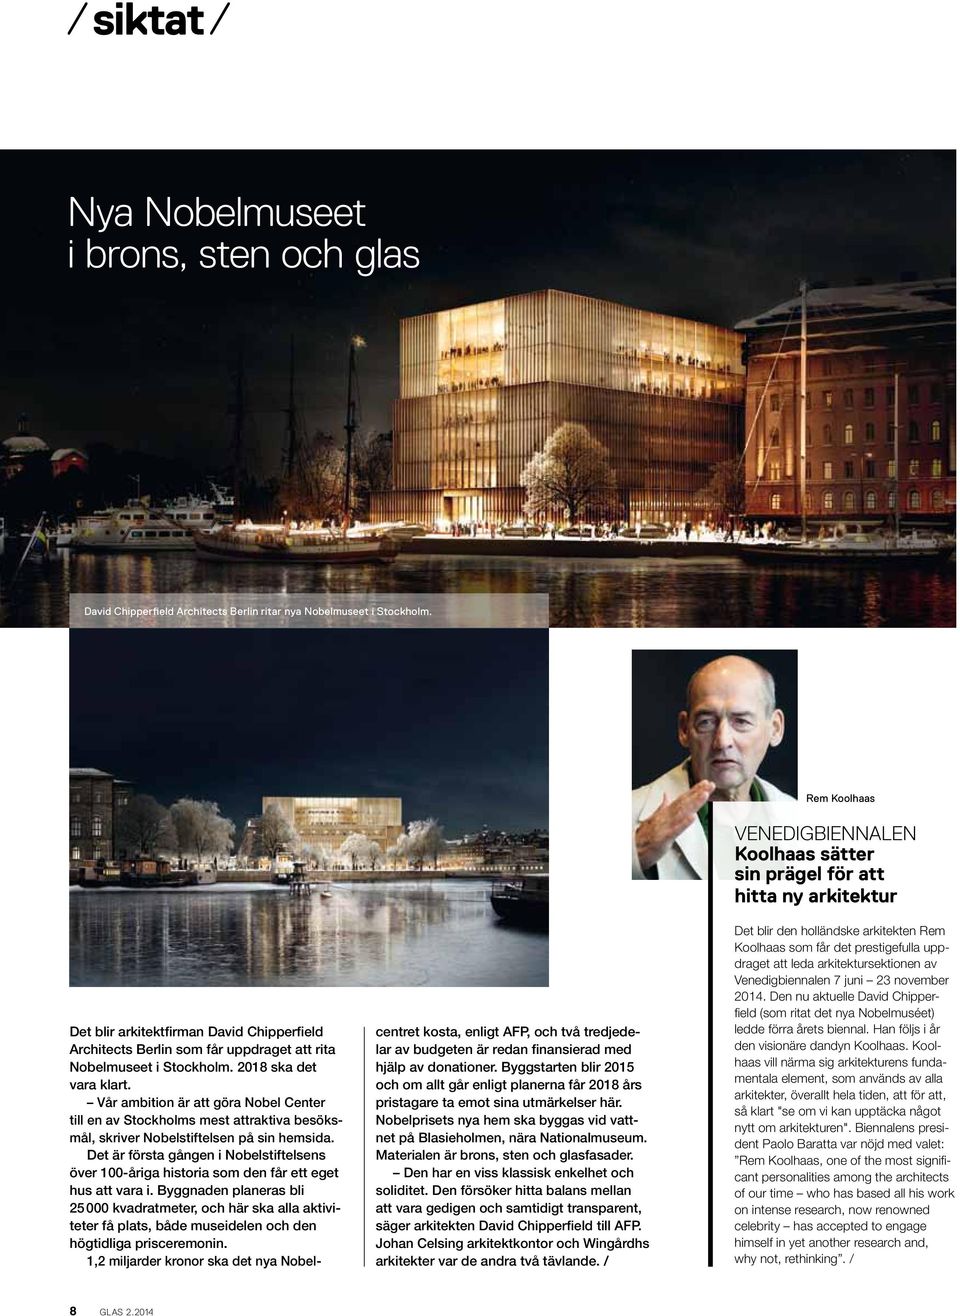 Vår ambition är att göra Nobel Center till en av Stockholms mest attraktiva besöksmål, skriver Nobelstiftelsen på sin hemsida.